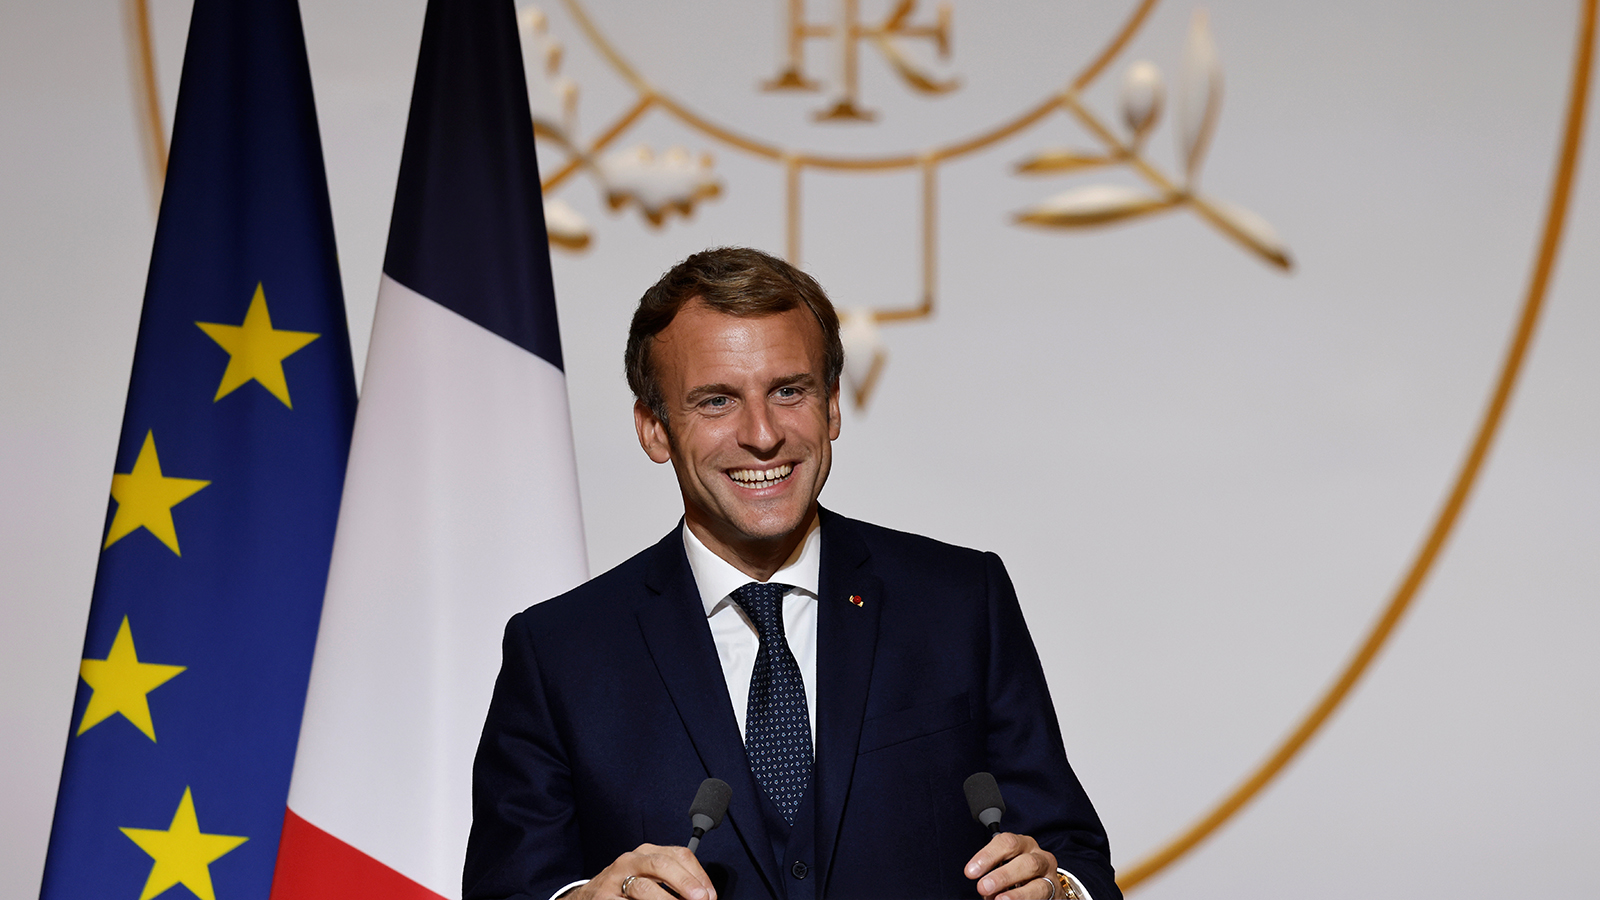 Макрон под вопросом: чем могут закончиться выборы во Франции